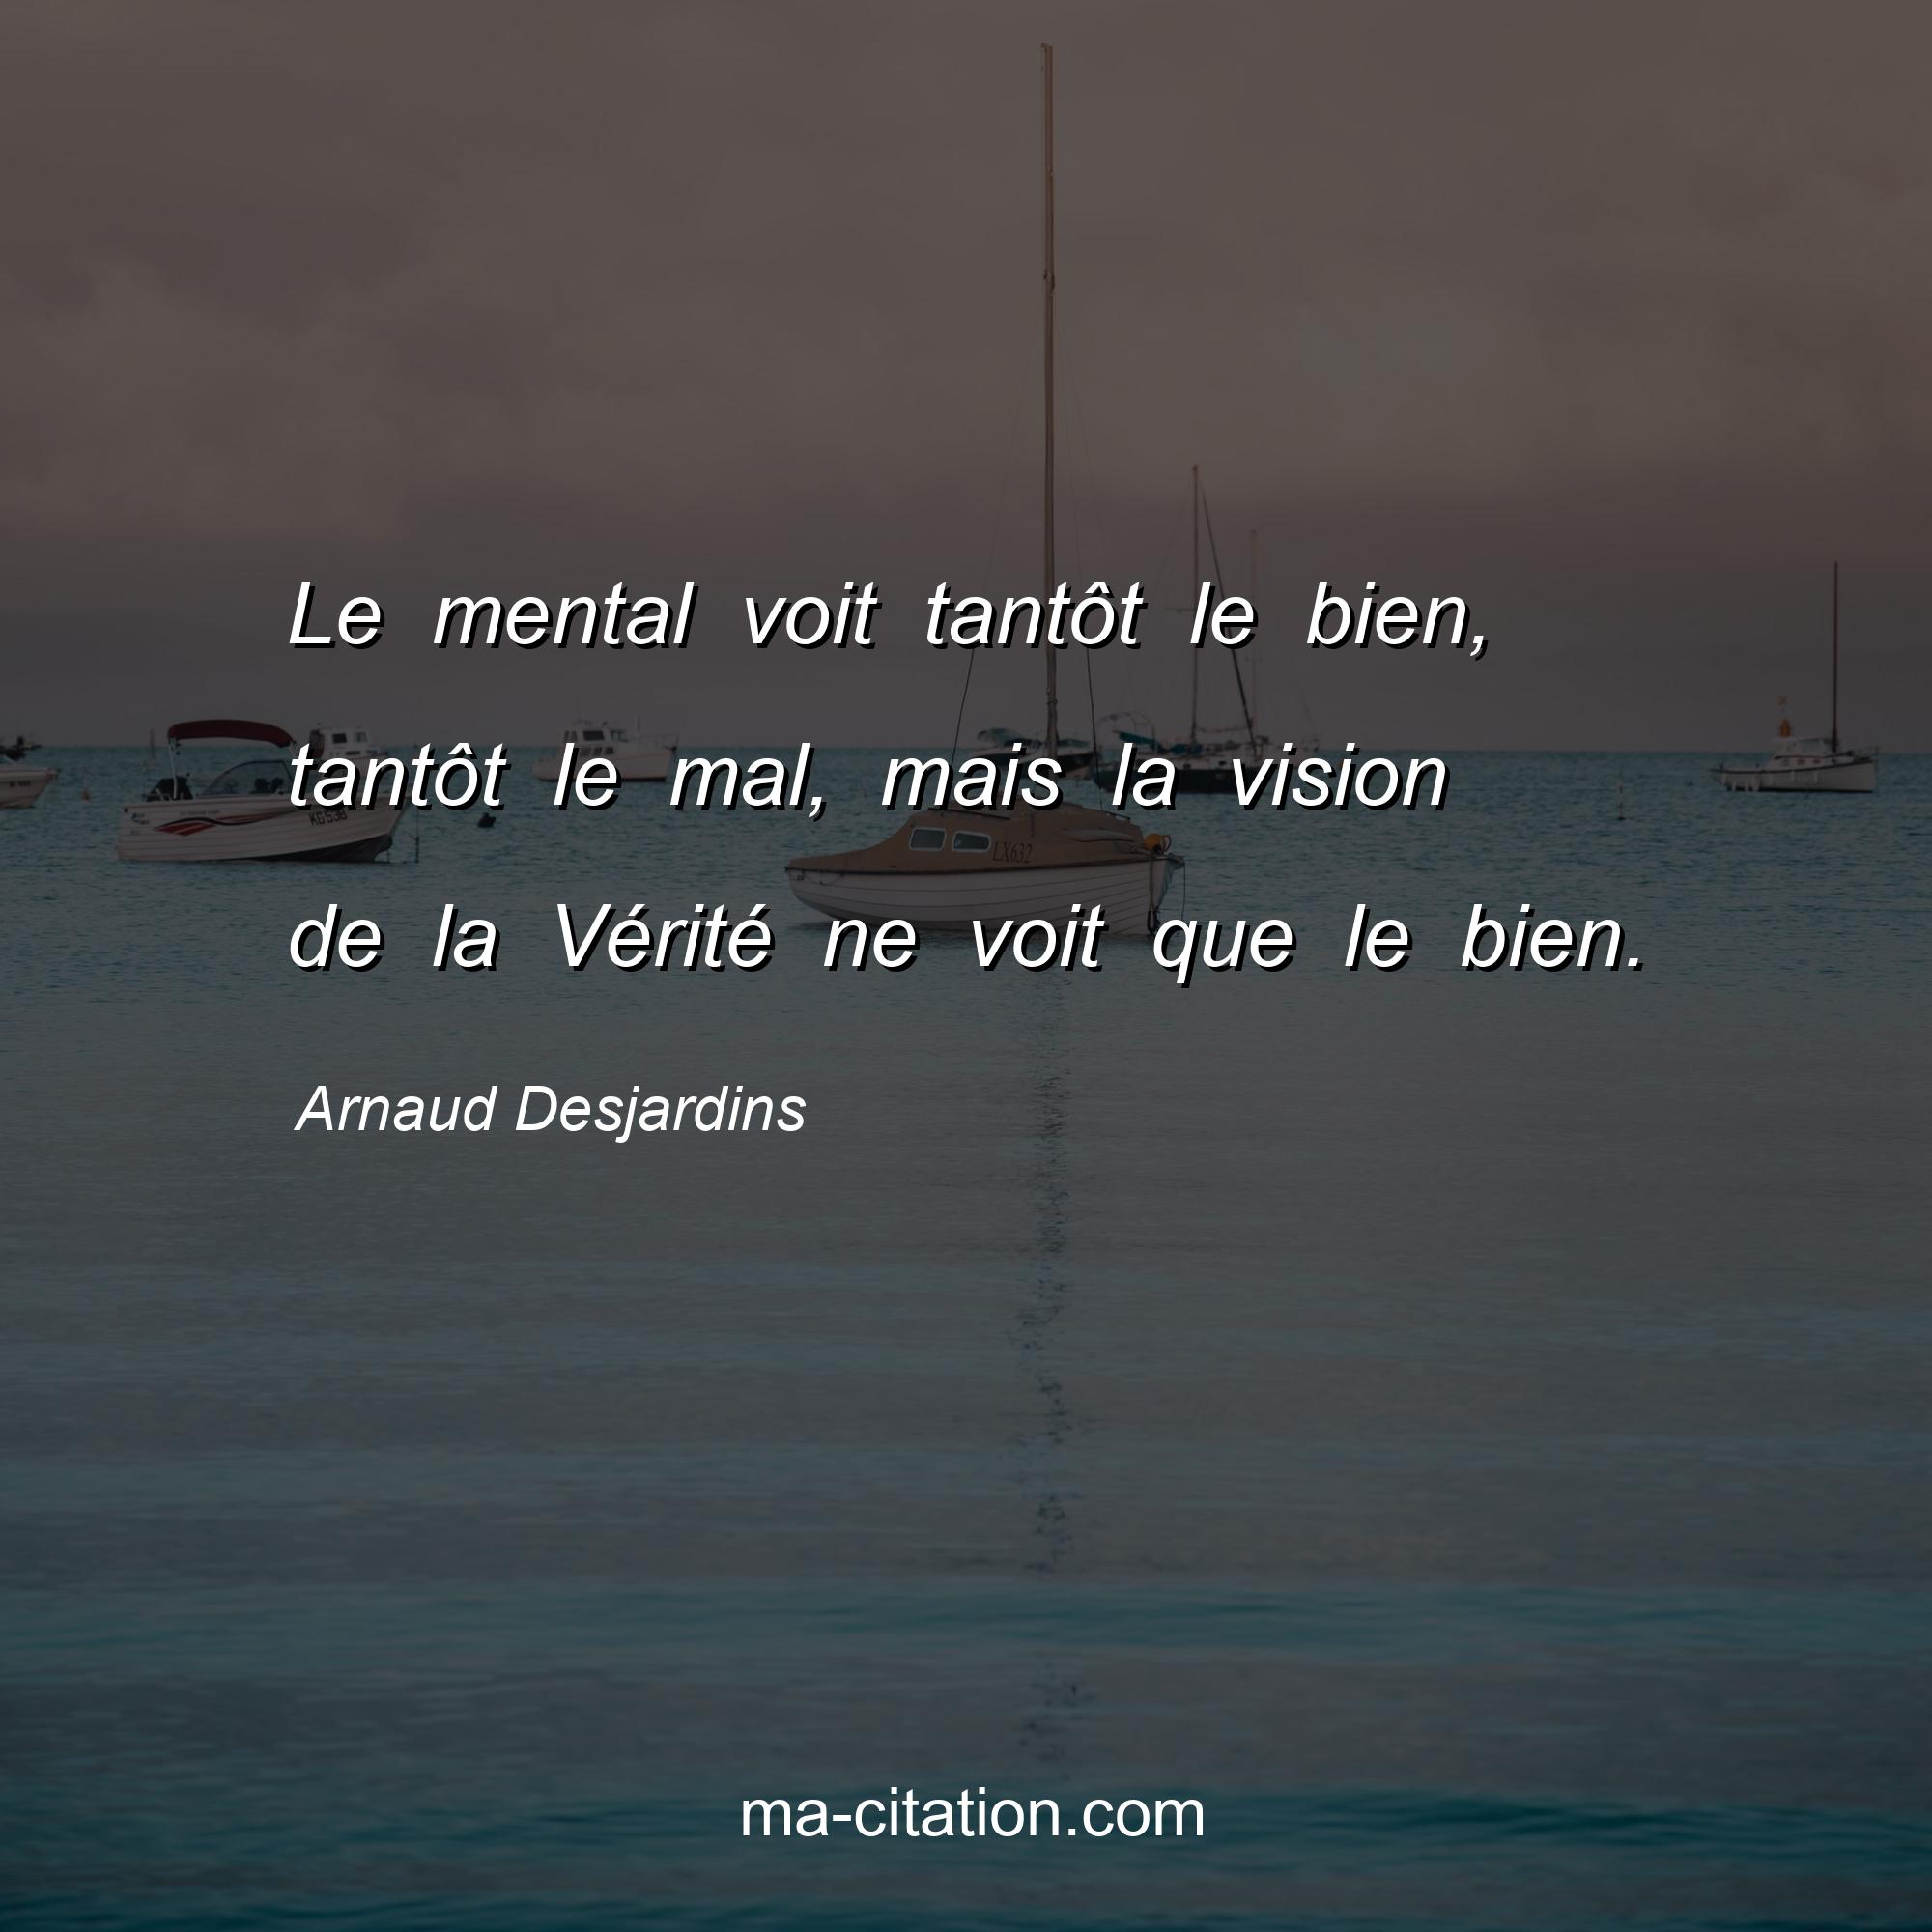 Arnaud Desjardins : Le mental voit tantôt le bien, tantôt le mal, mais la vision de la Vérité ne voit que le bien.